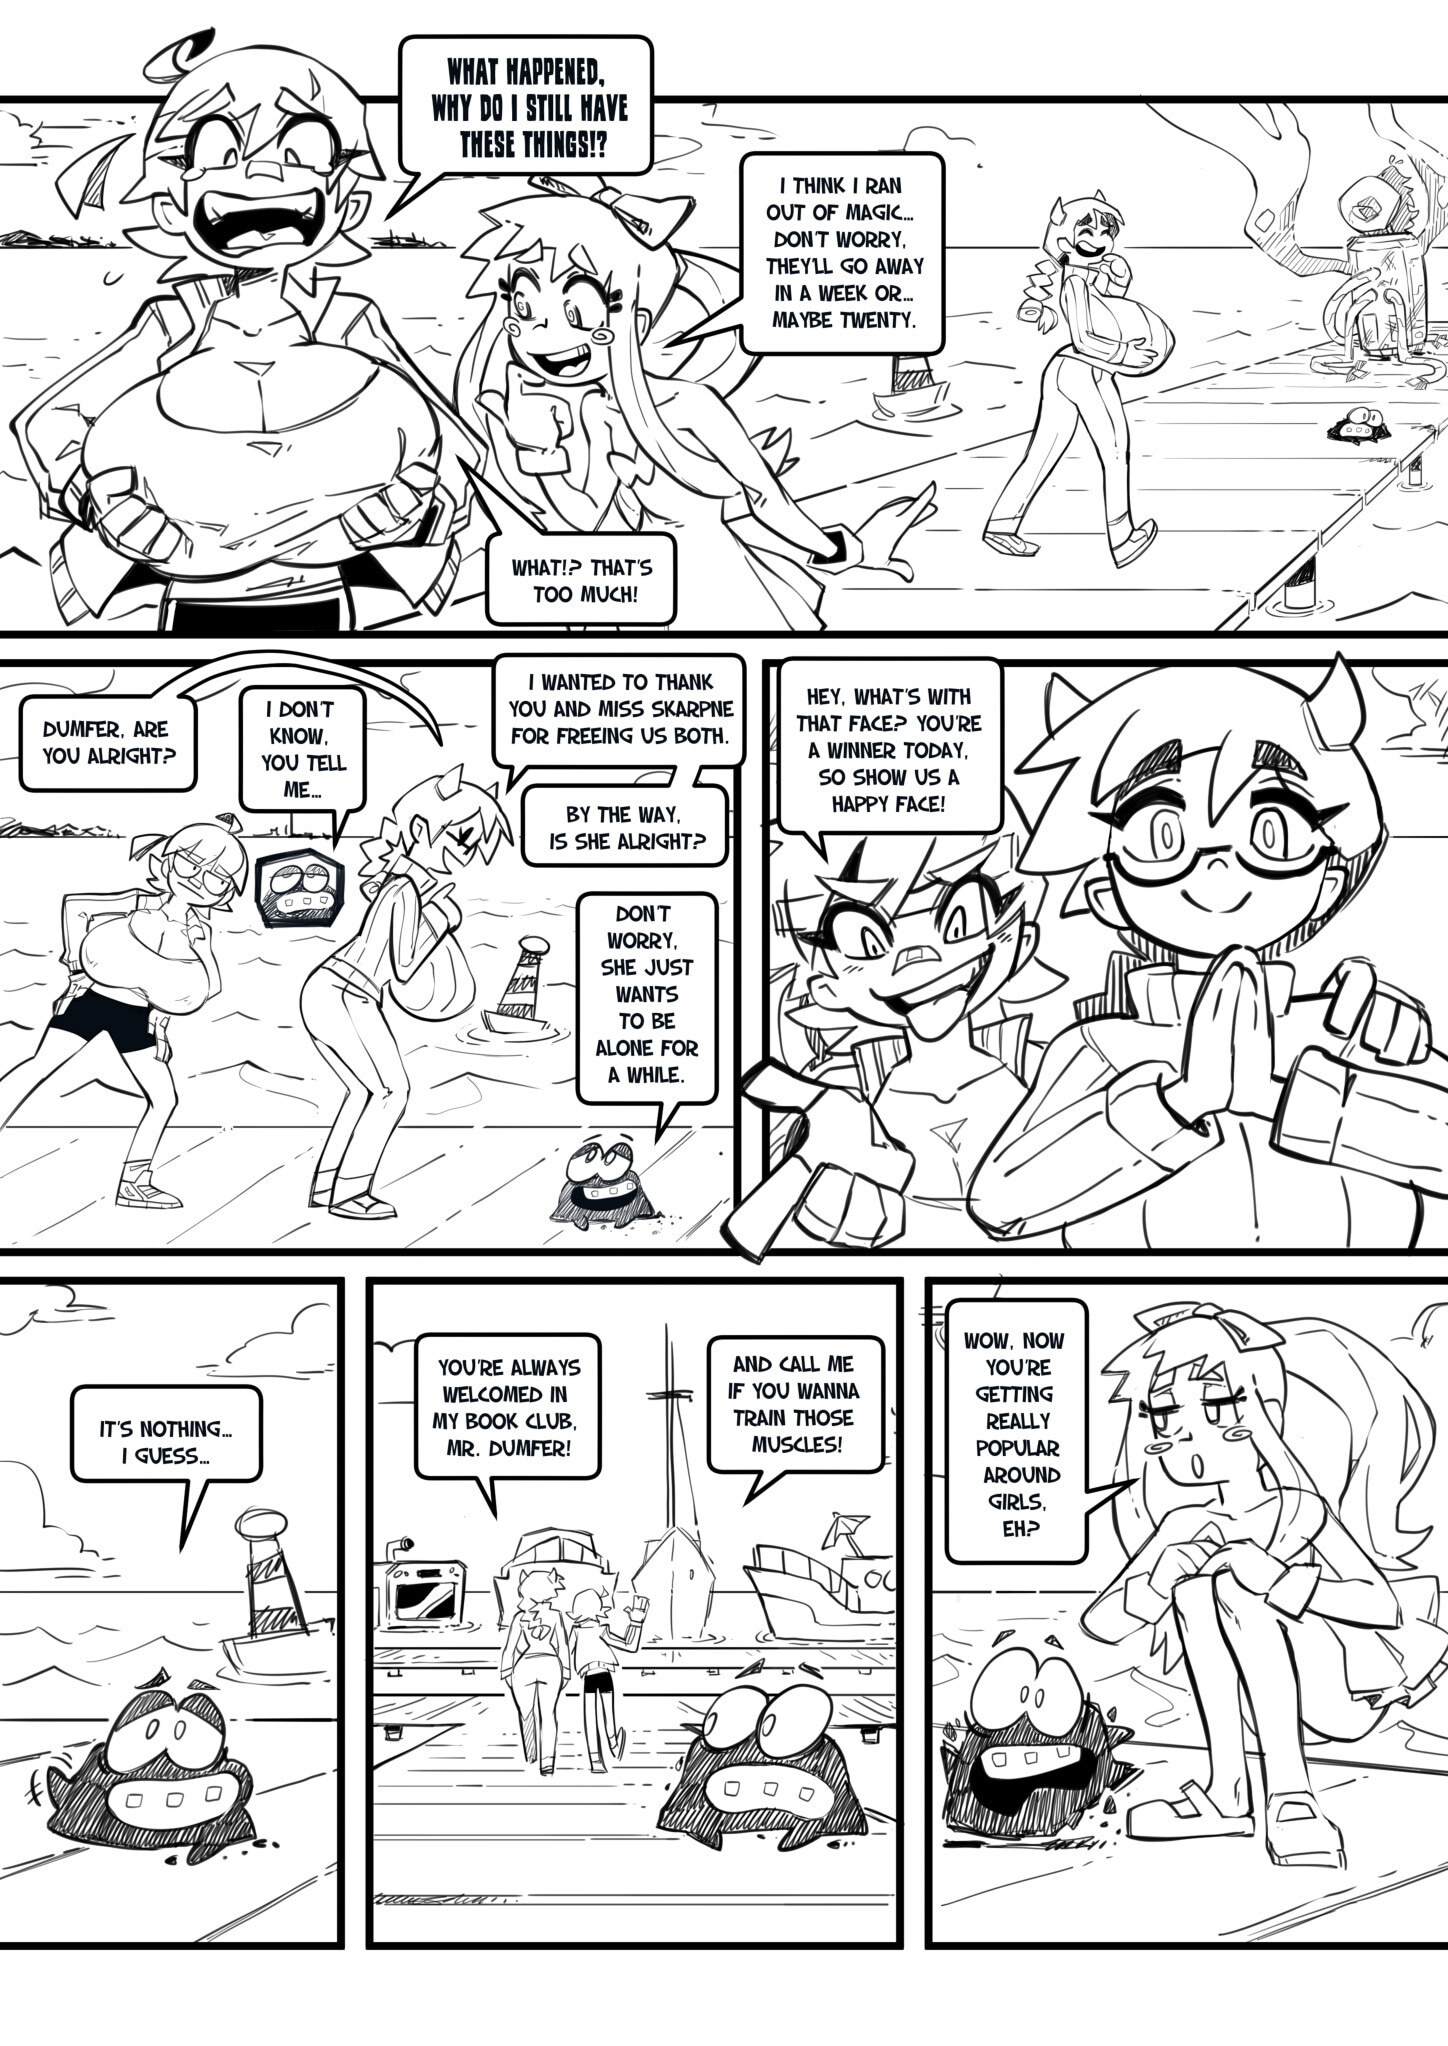 Skarpworld 10: Milk Crisis 4 - Gravity - Page 31